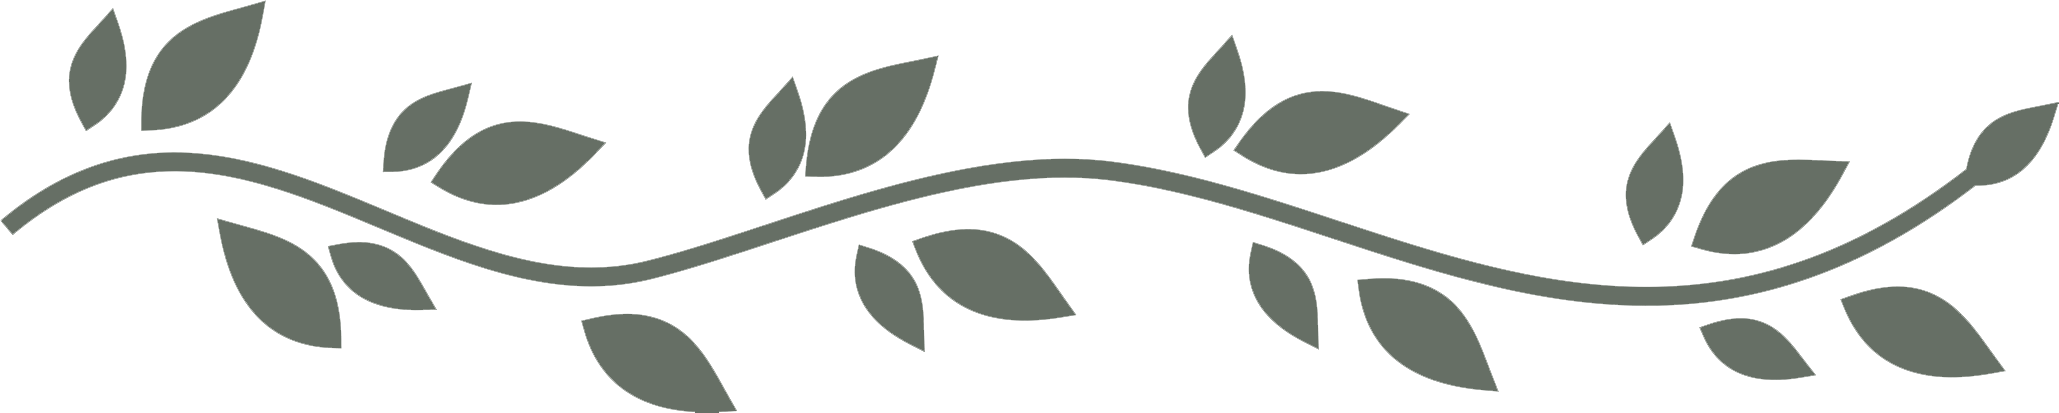 Leaf Divider Png - Leaves Divider Png White Clipart (2059x413), Png Download